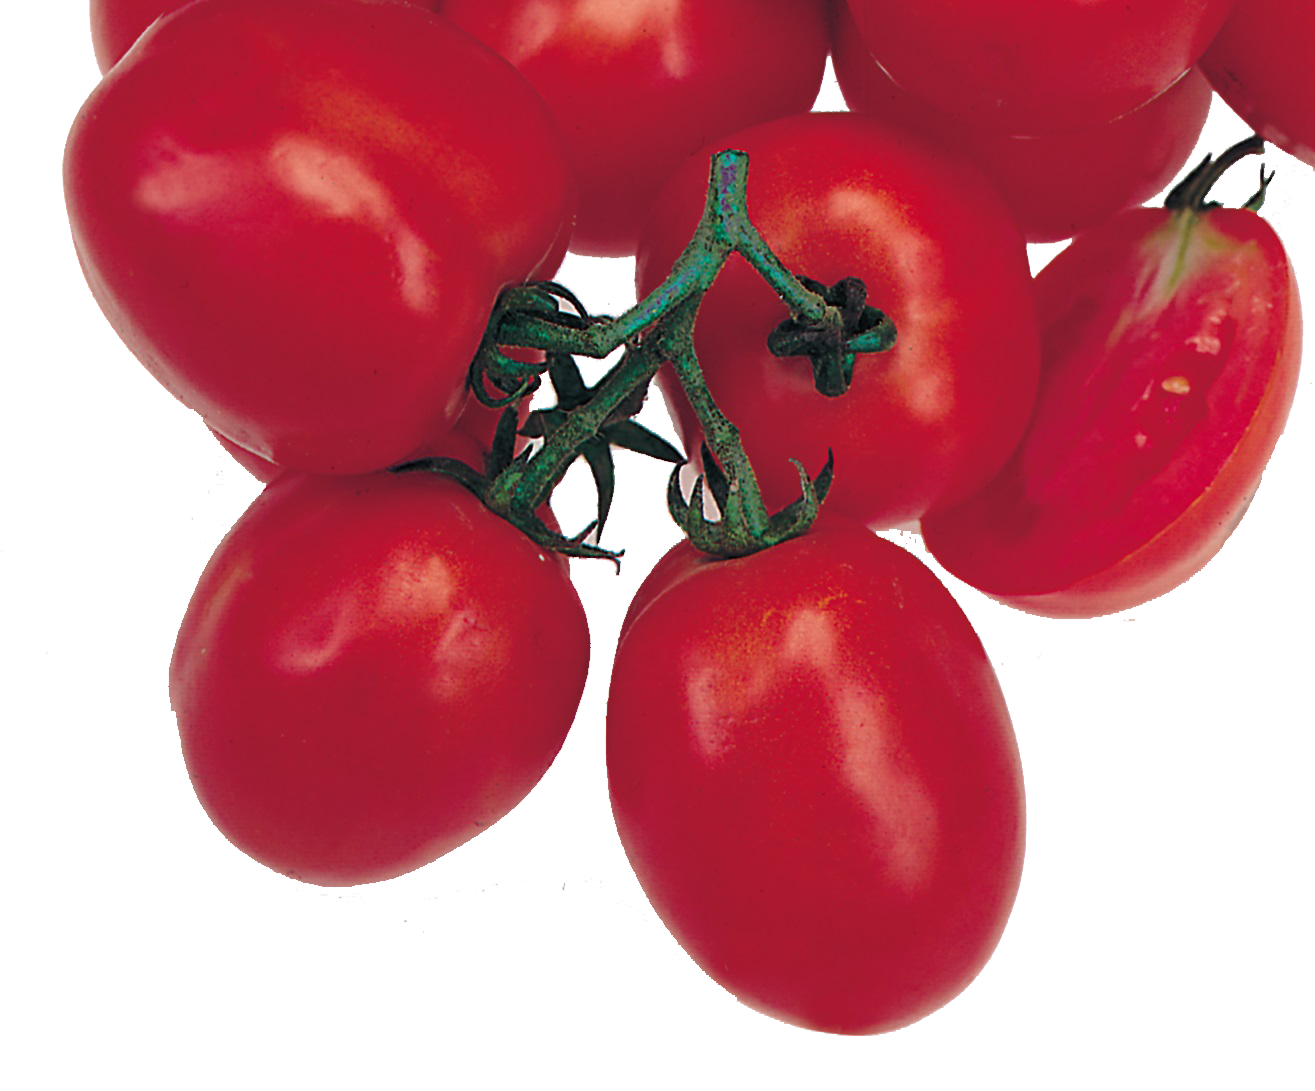 OXLY Tomato